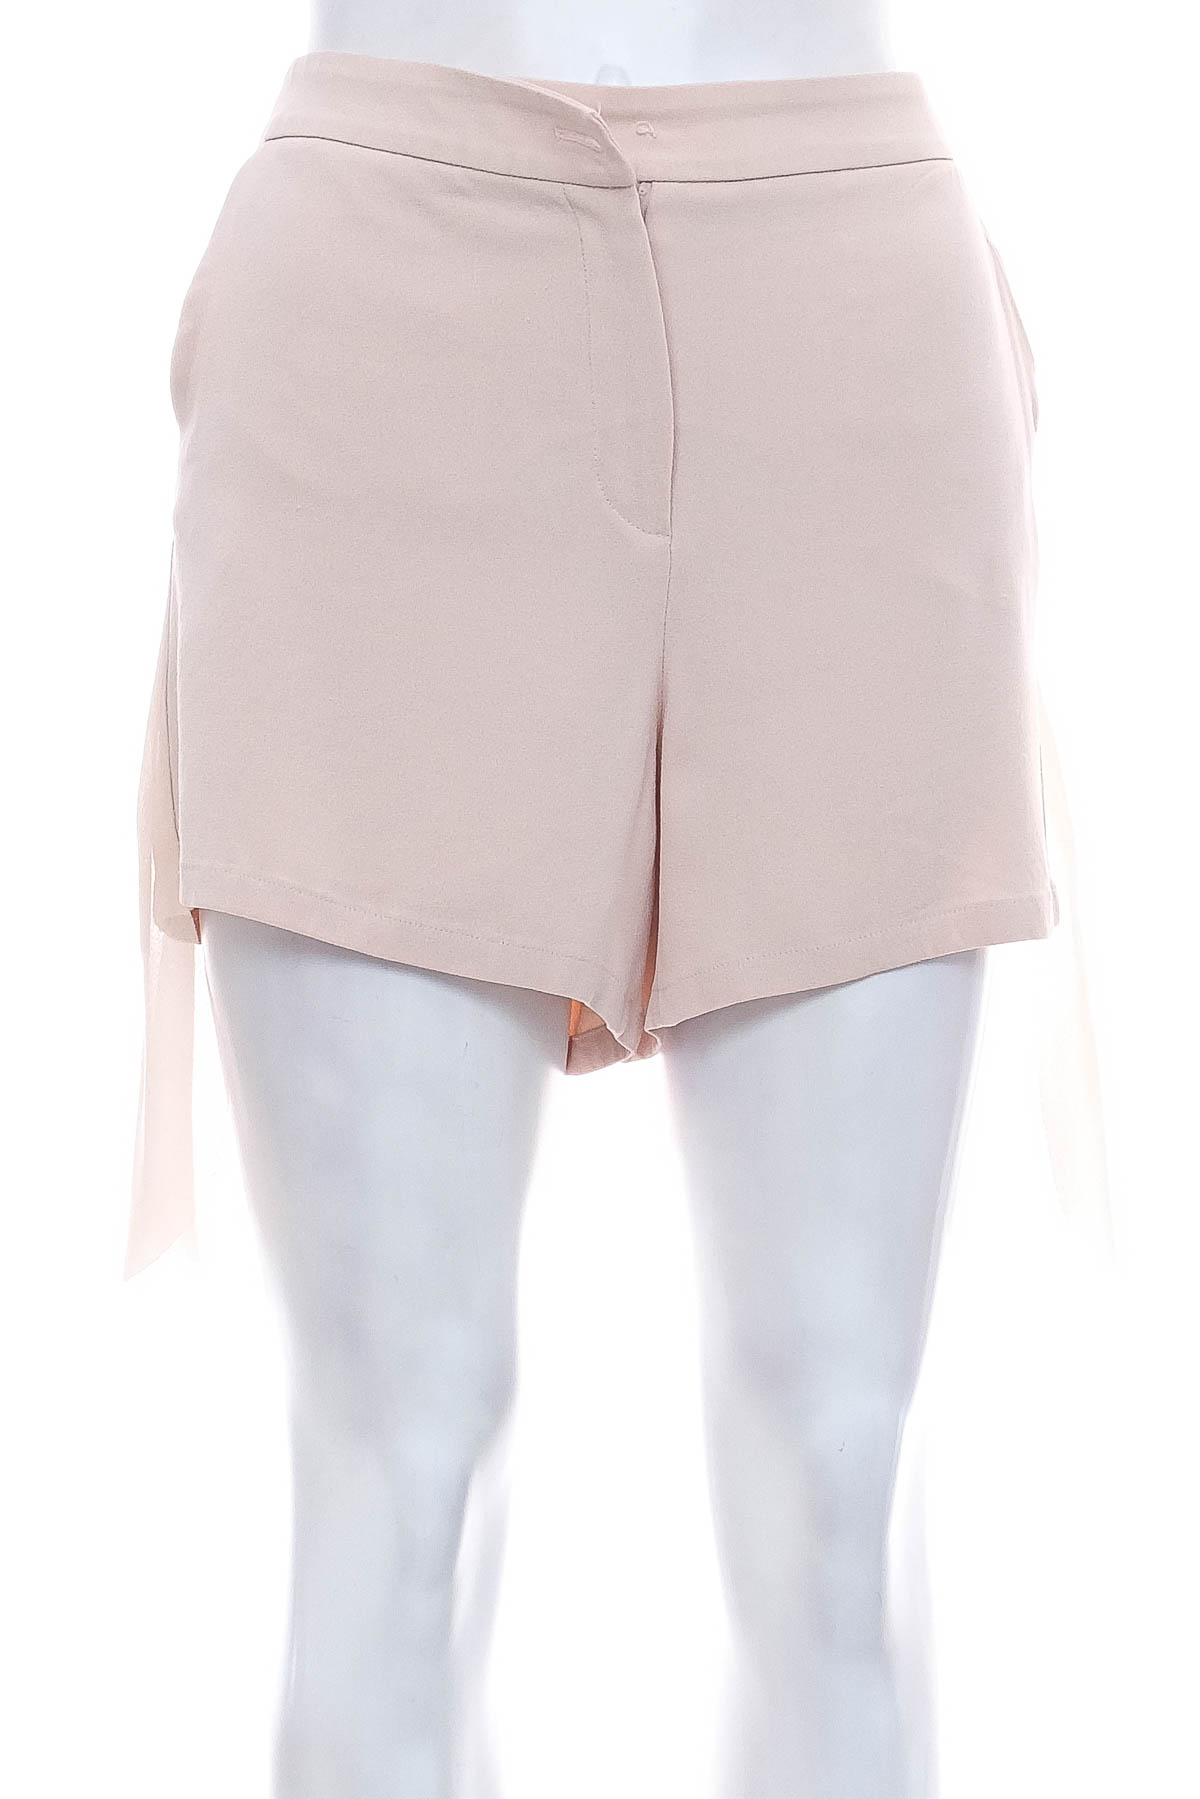 Female shorts - EMPORIO ARMANI - 0